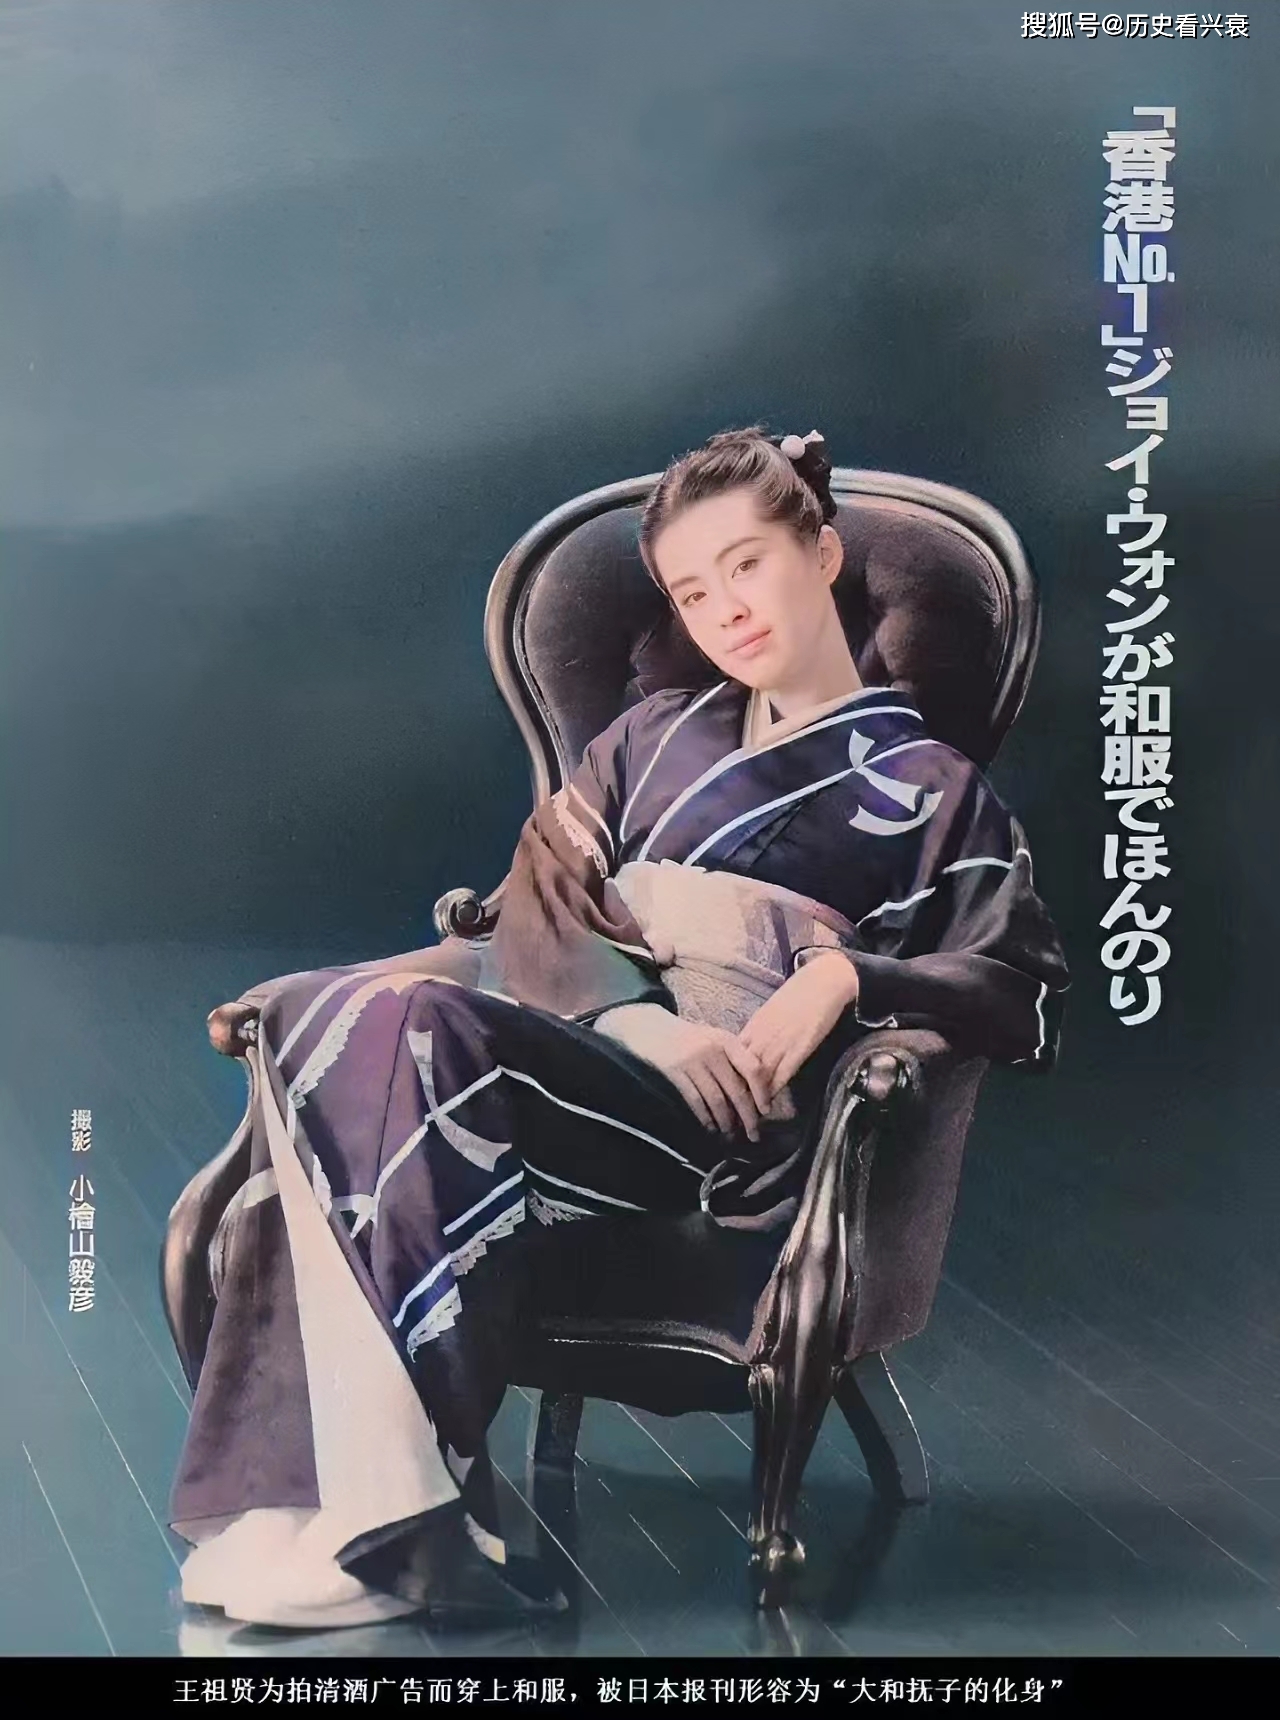 原创老照片1992年代言日本清酒广告的王祖贤邓丽君年轻时候的照片